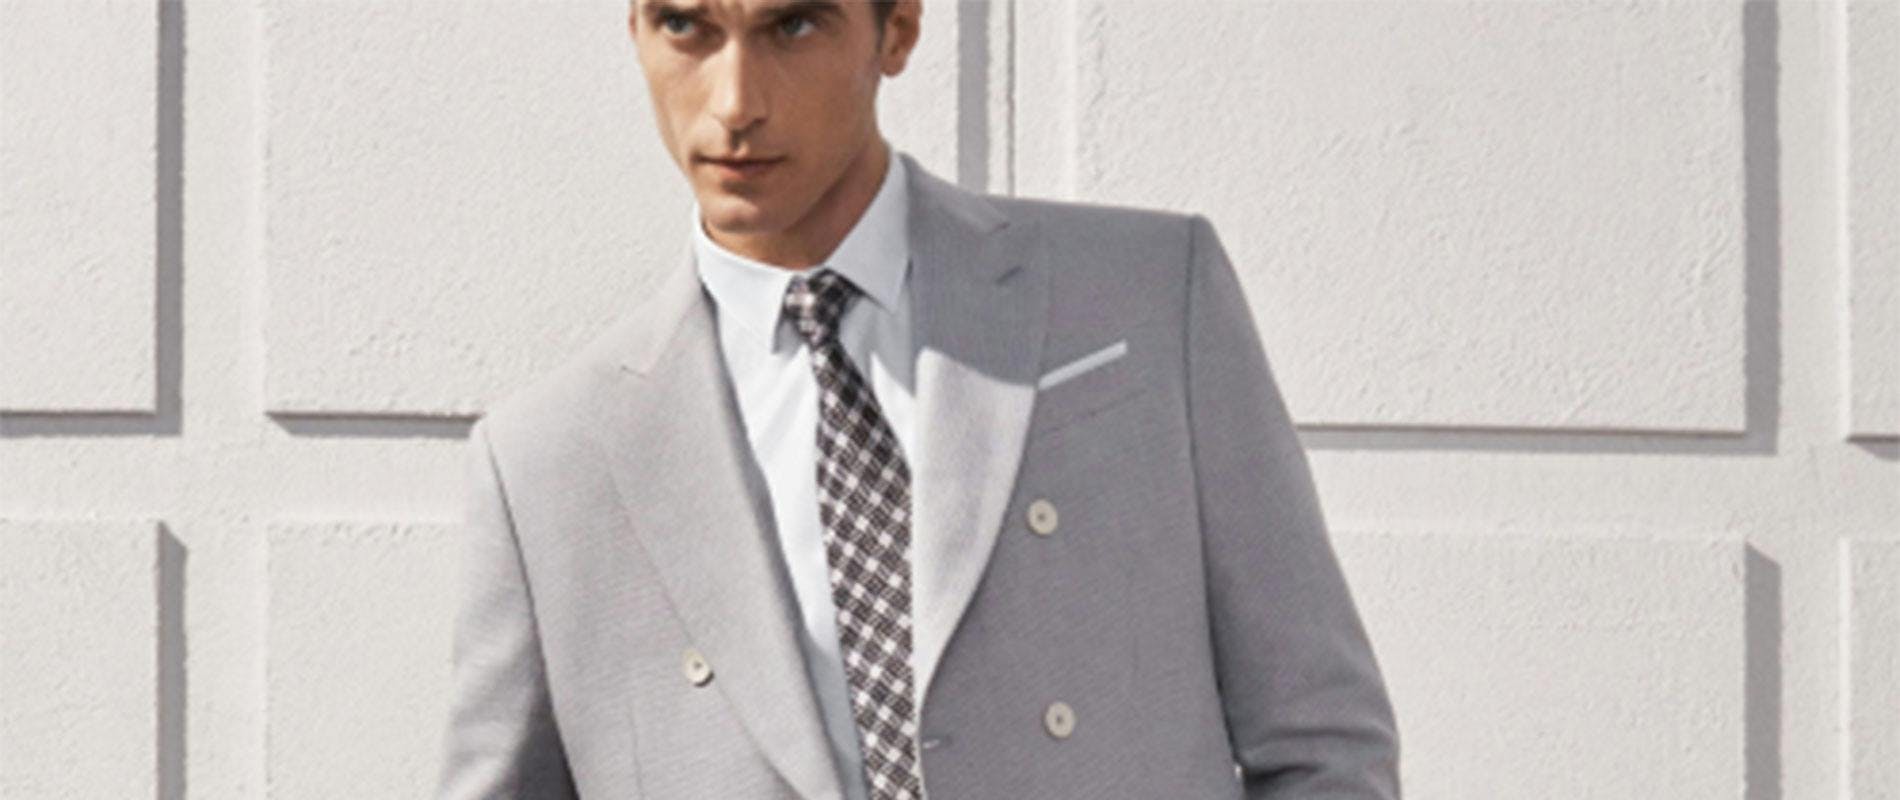 tie accessories clothing apparel suit overcoat coat blazer jacket person